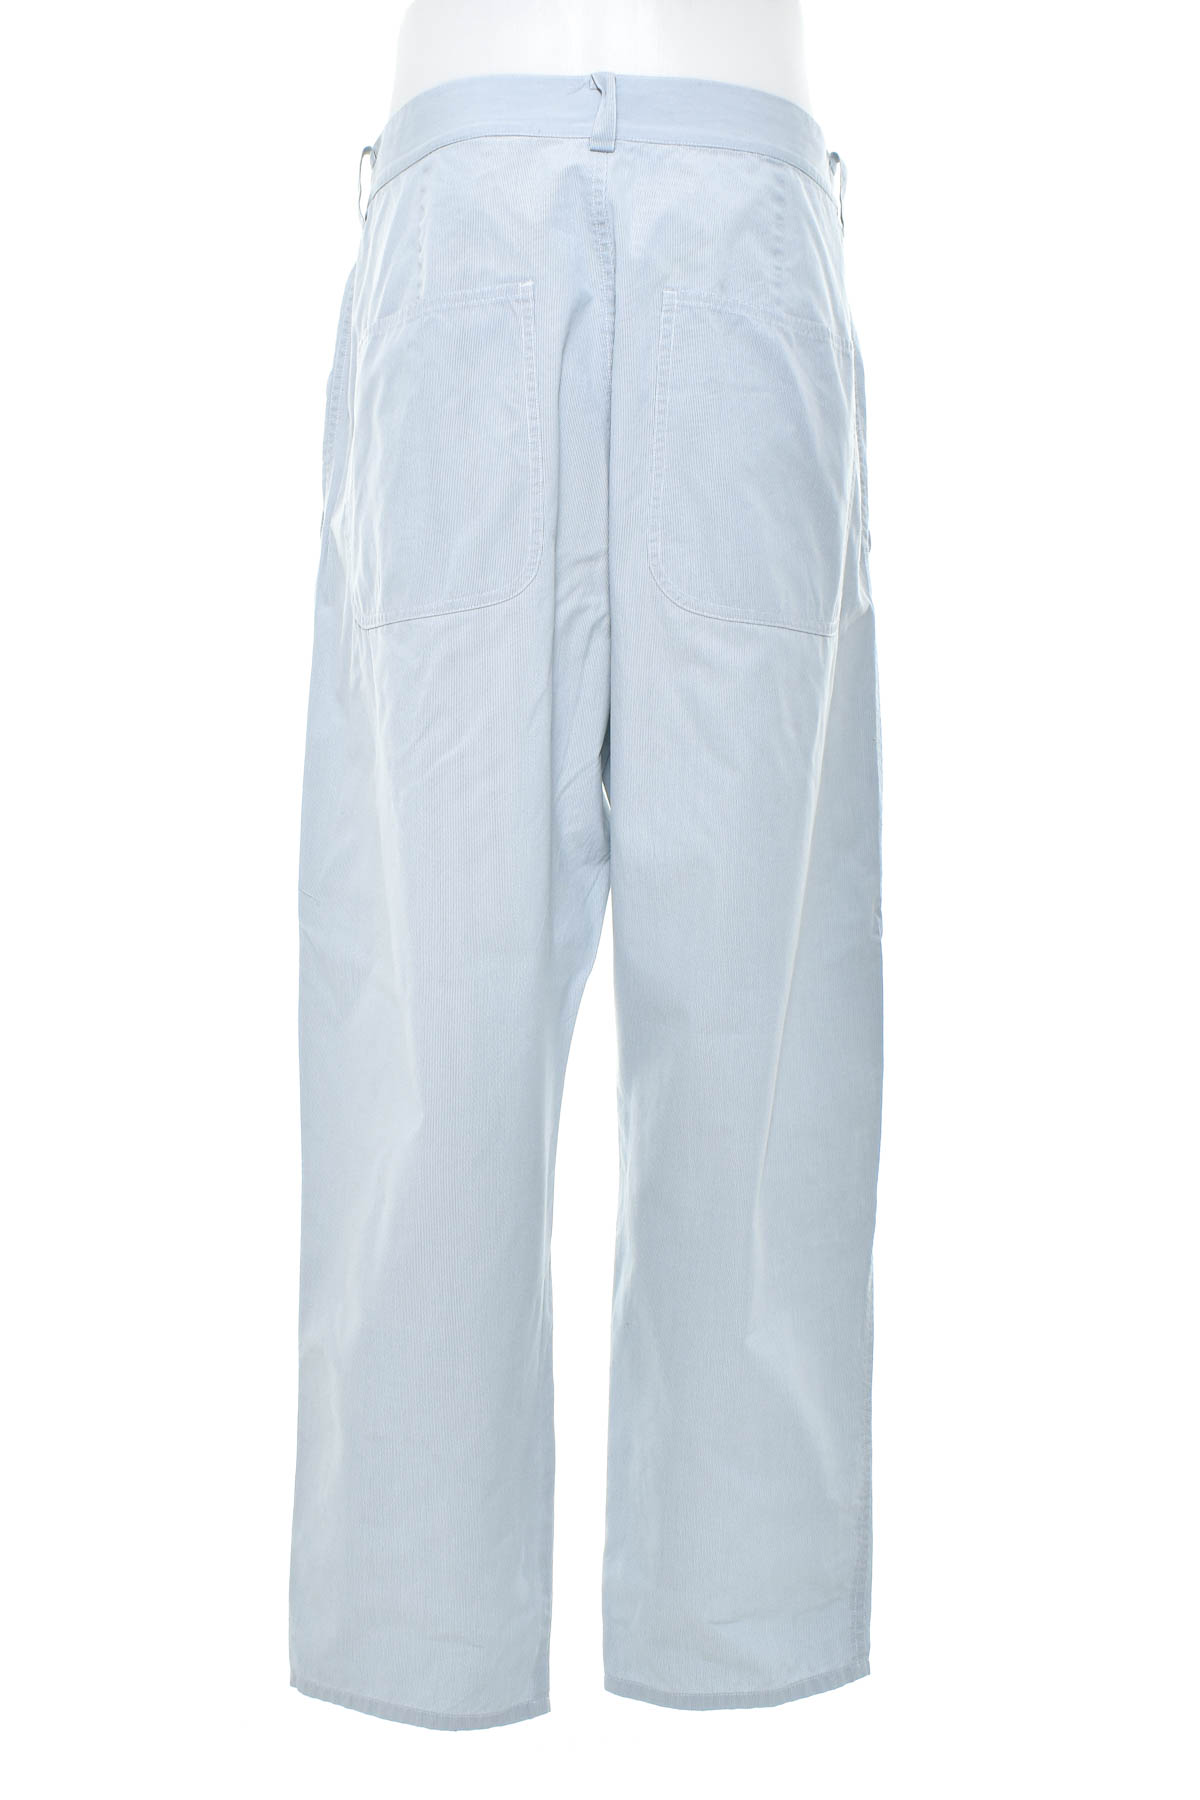 Men's trousers - COS - 1